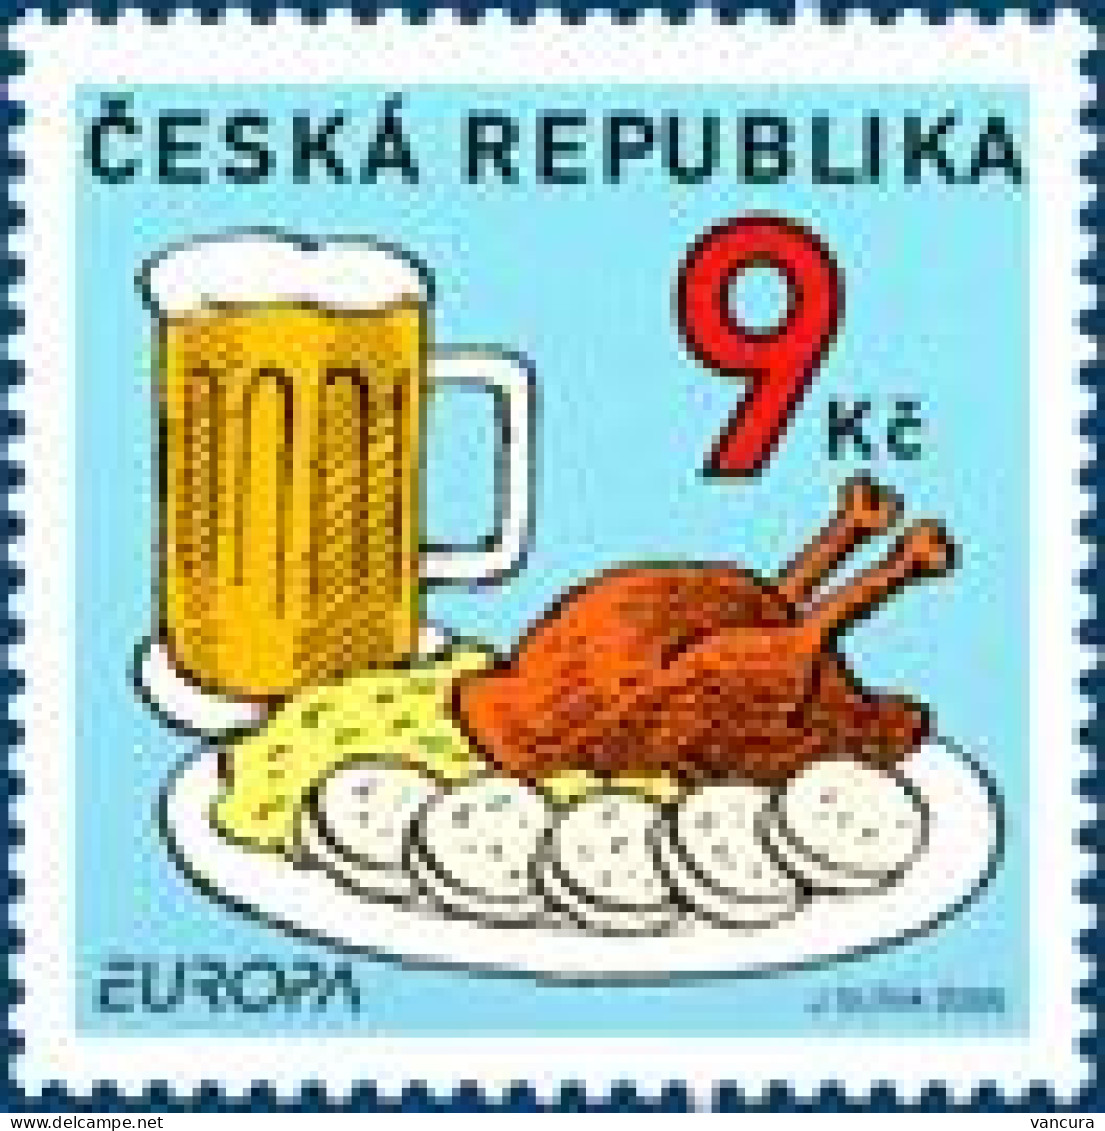 ** 436 Czech Republic EUROPA 2005 Beer Sauerkraut Dumpling Goose - Bier